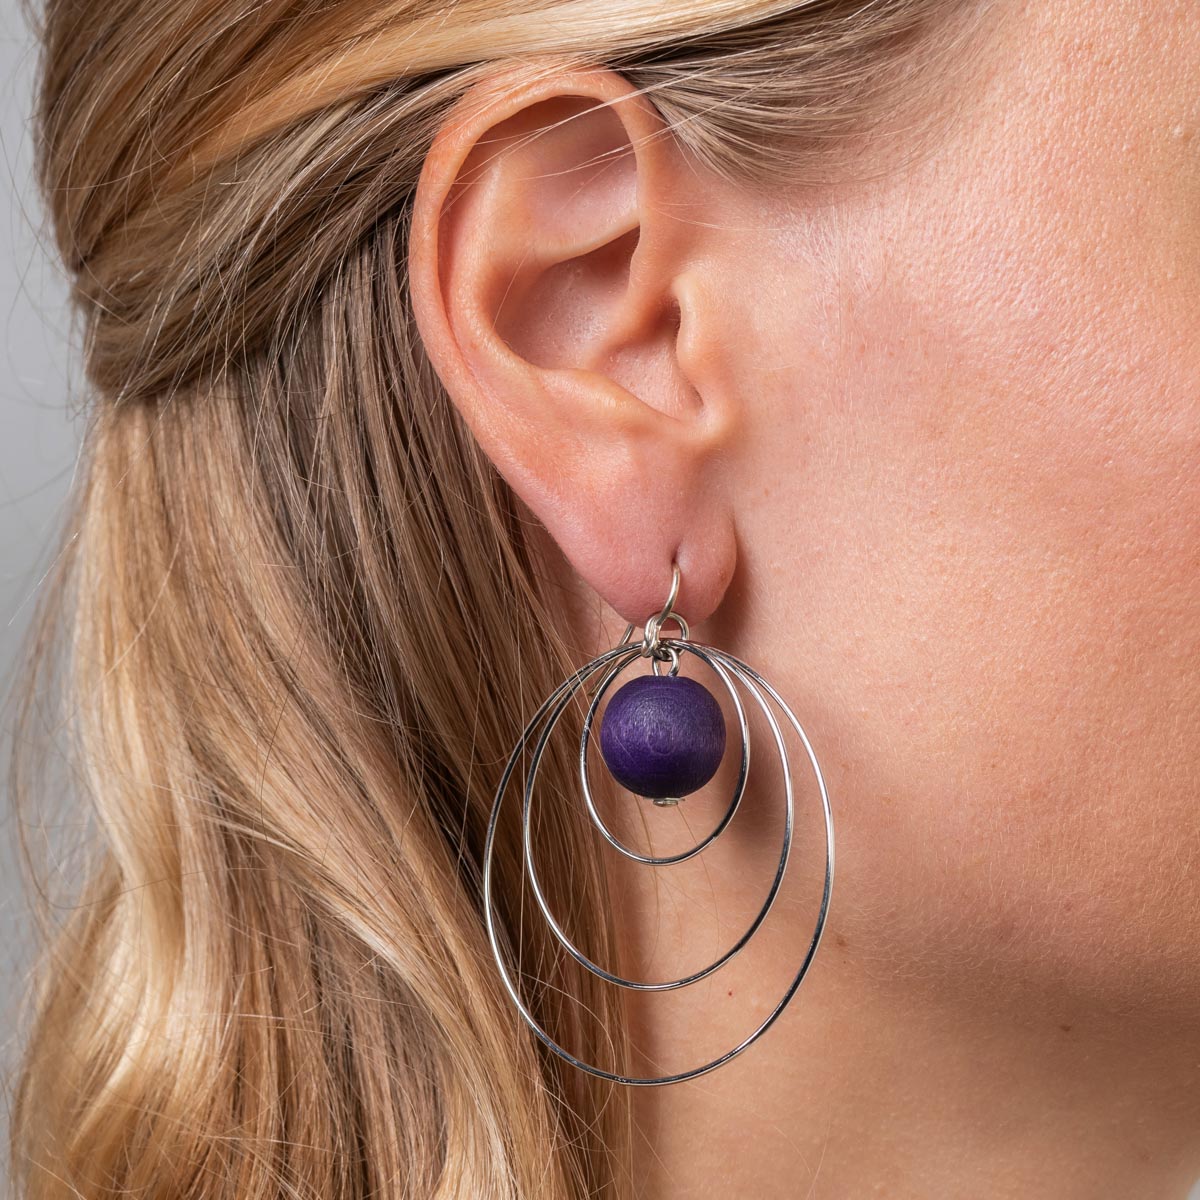 Piruetti earrings, purple